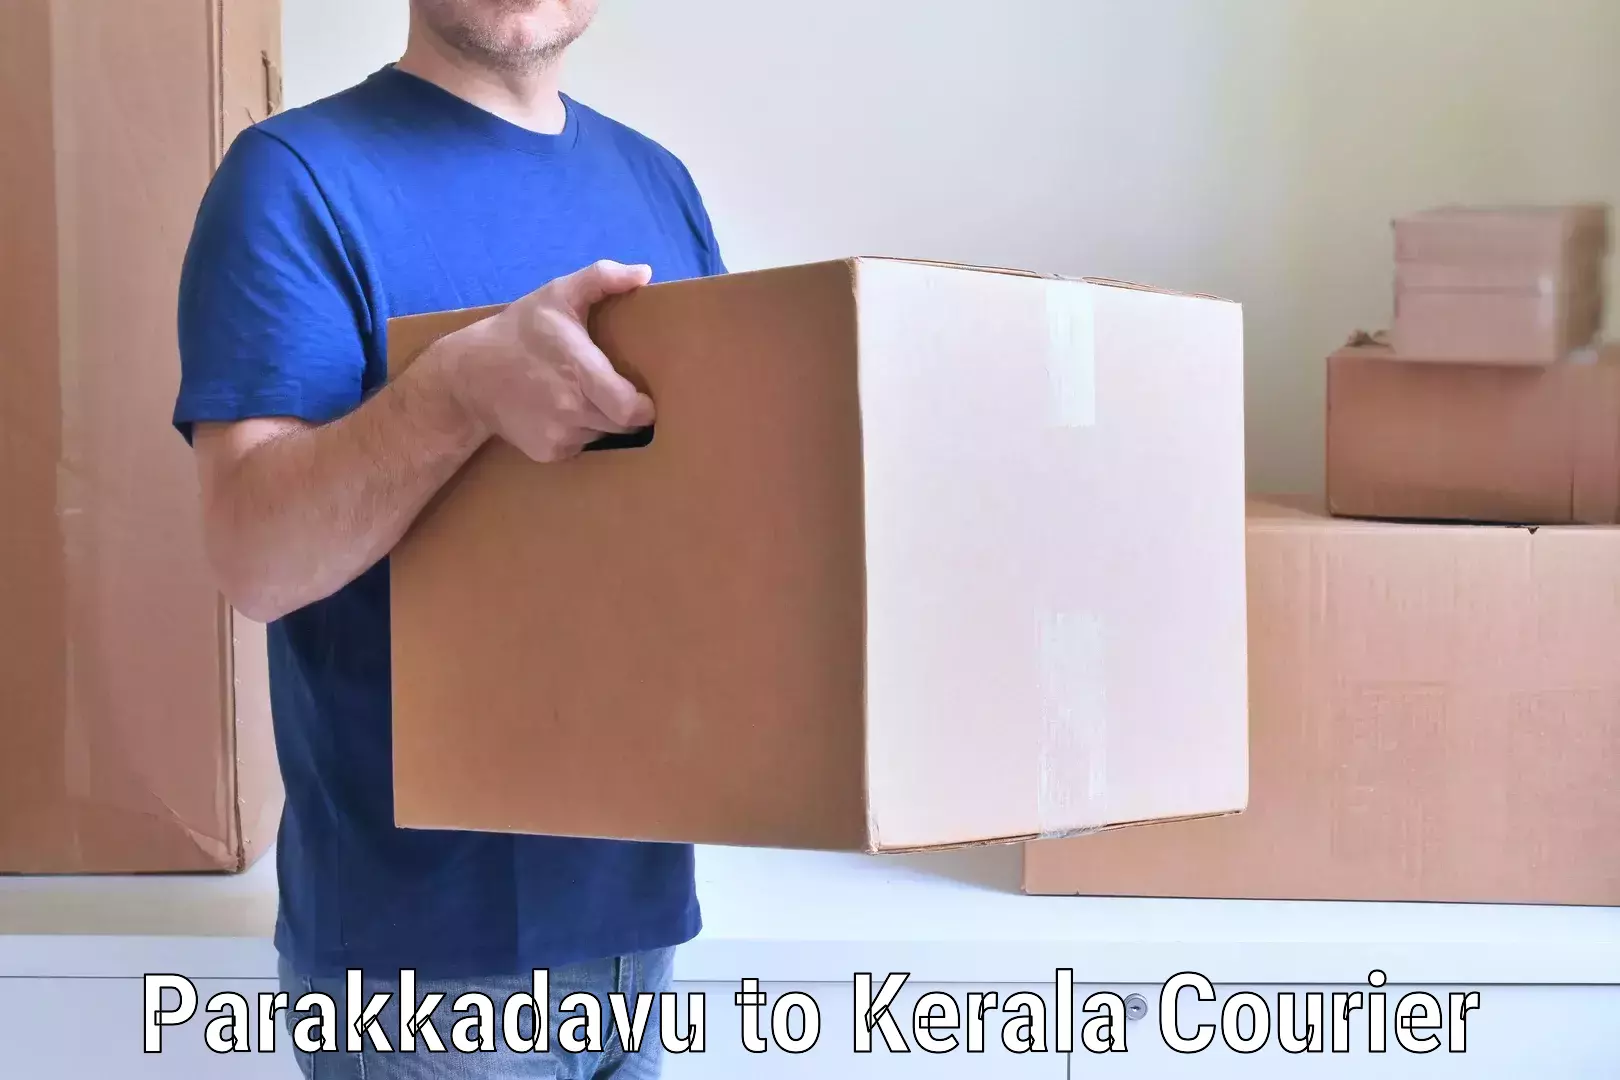 Furniture delivery service Parakkadavu to Poojapura